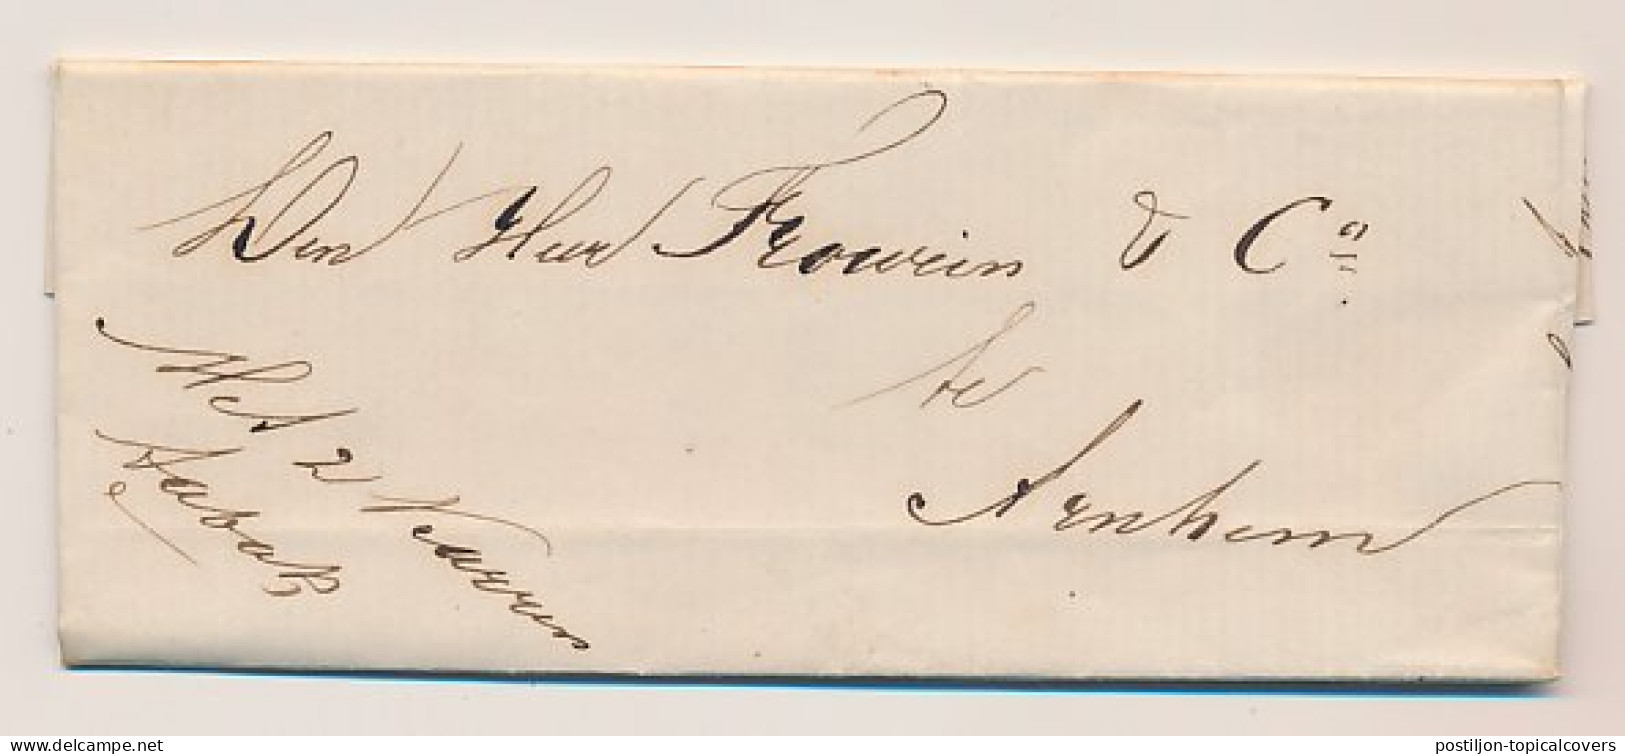 Amerongen - Arnhem 1872 - Met 2 Karren Tabak - Lettres & Documents